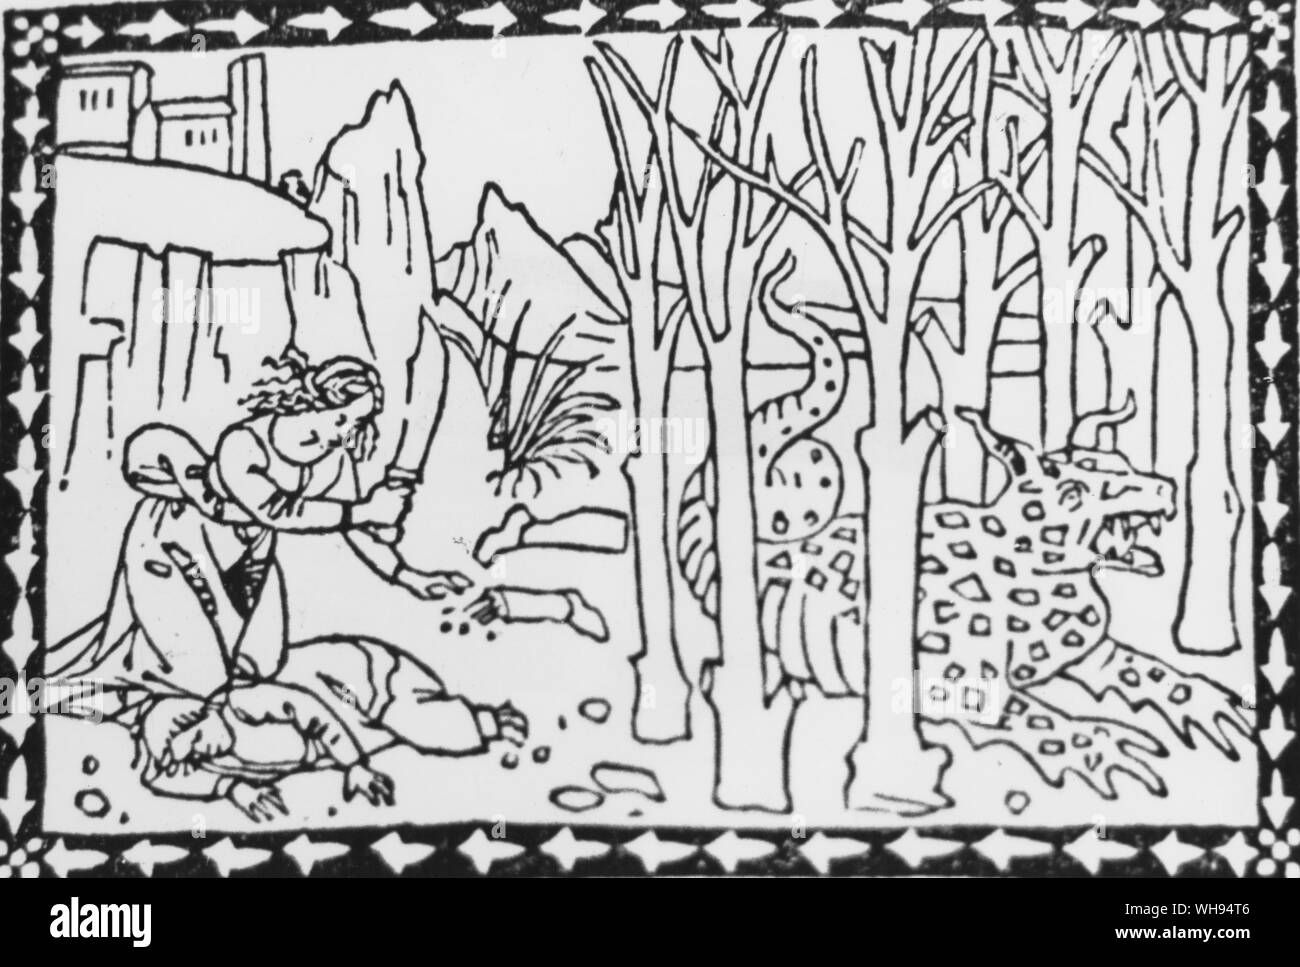 Animaux fabuleux et les dragons abondent dans les gravures sur bois du début de livres imprimés. À partir de la Fior di virtu 1491 vient le basilic, symbole de la cruauté, venimeux, brûler la terre avec son souffle. Leonardo décrit plus d'une fois et il semble qu'elle varie énormément dans la taille. Banque D'Images